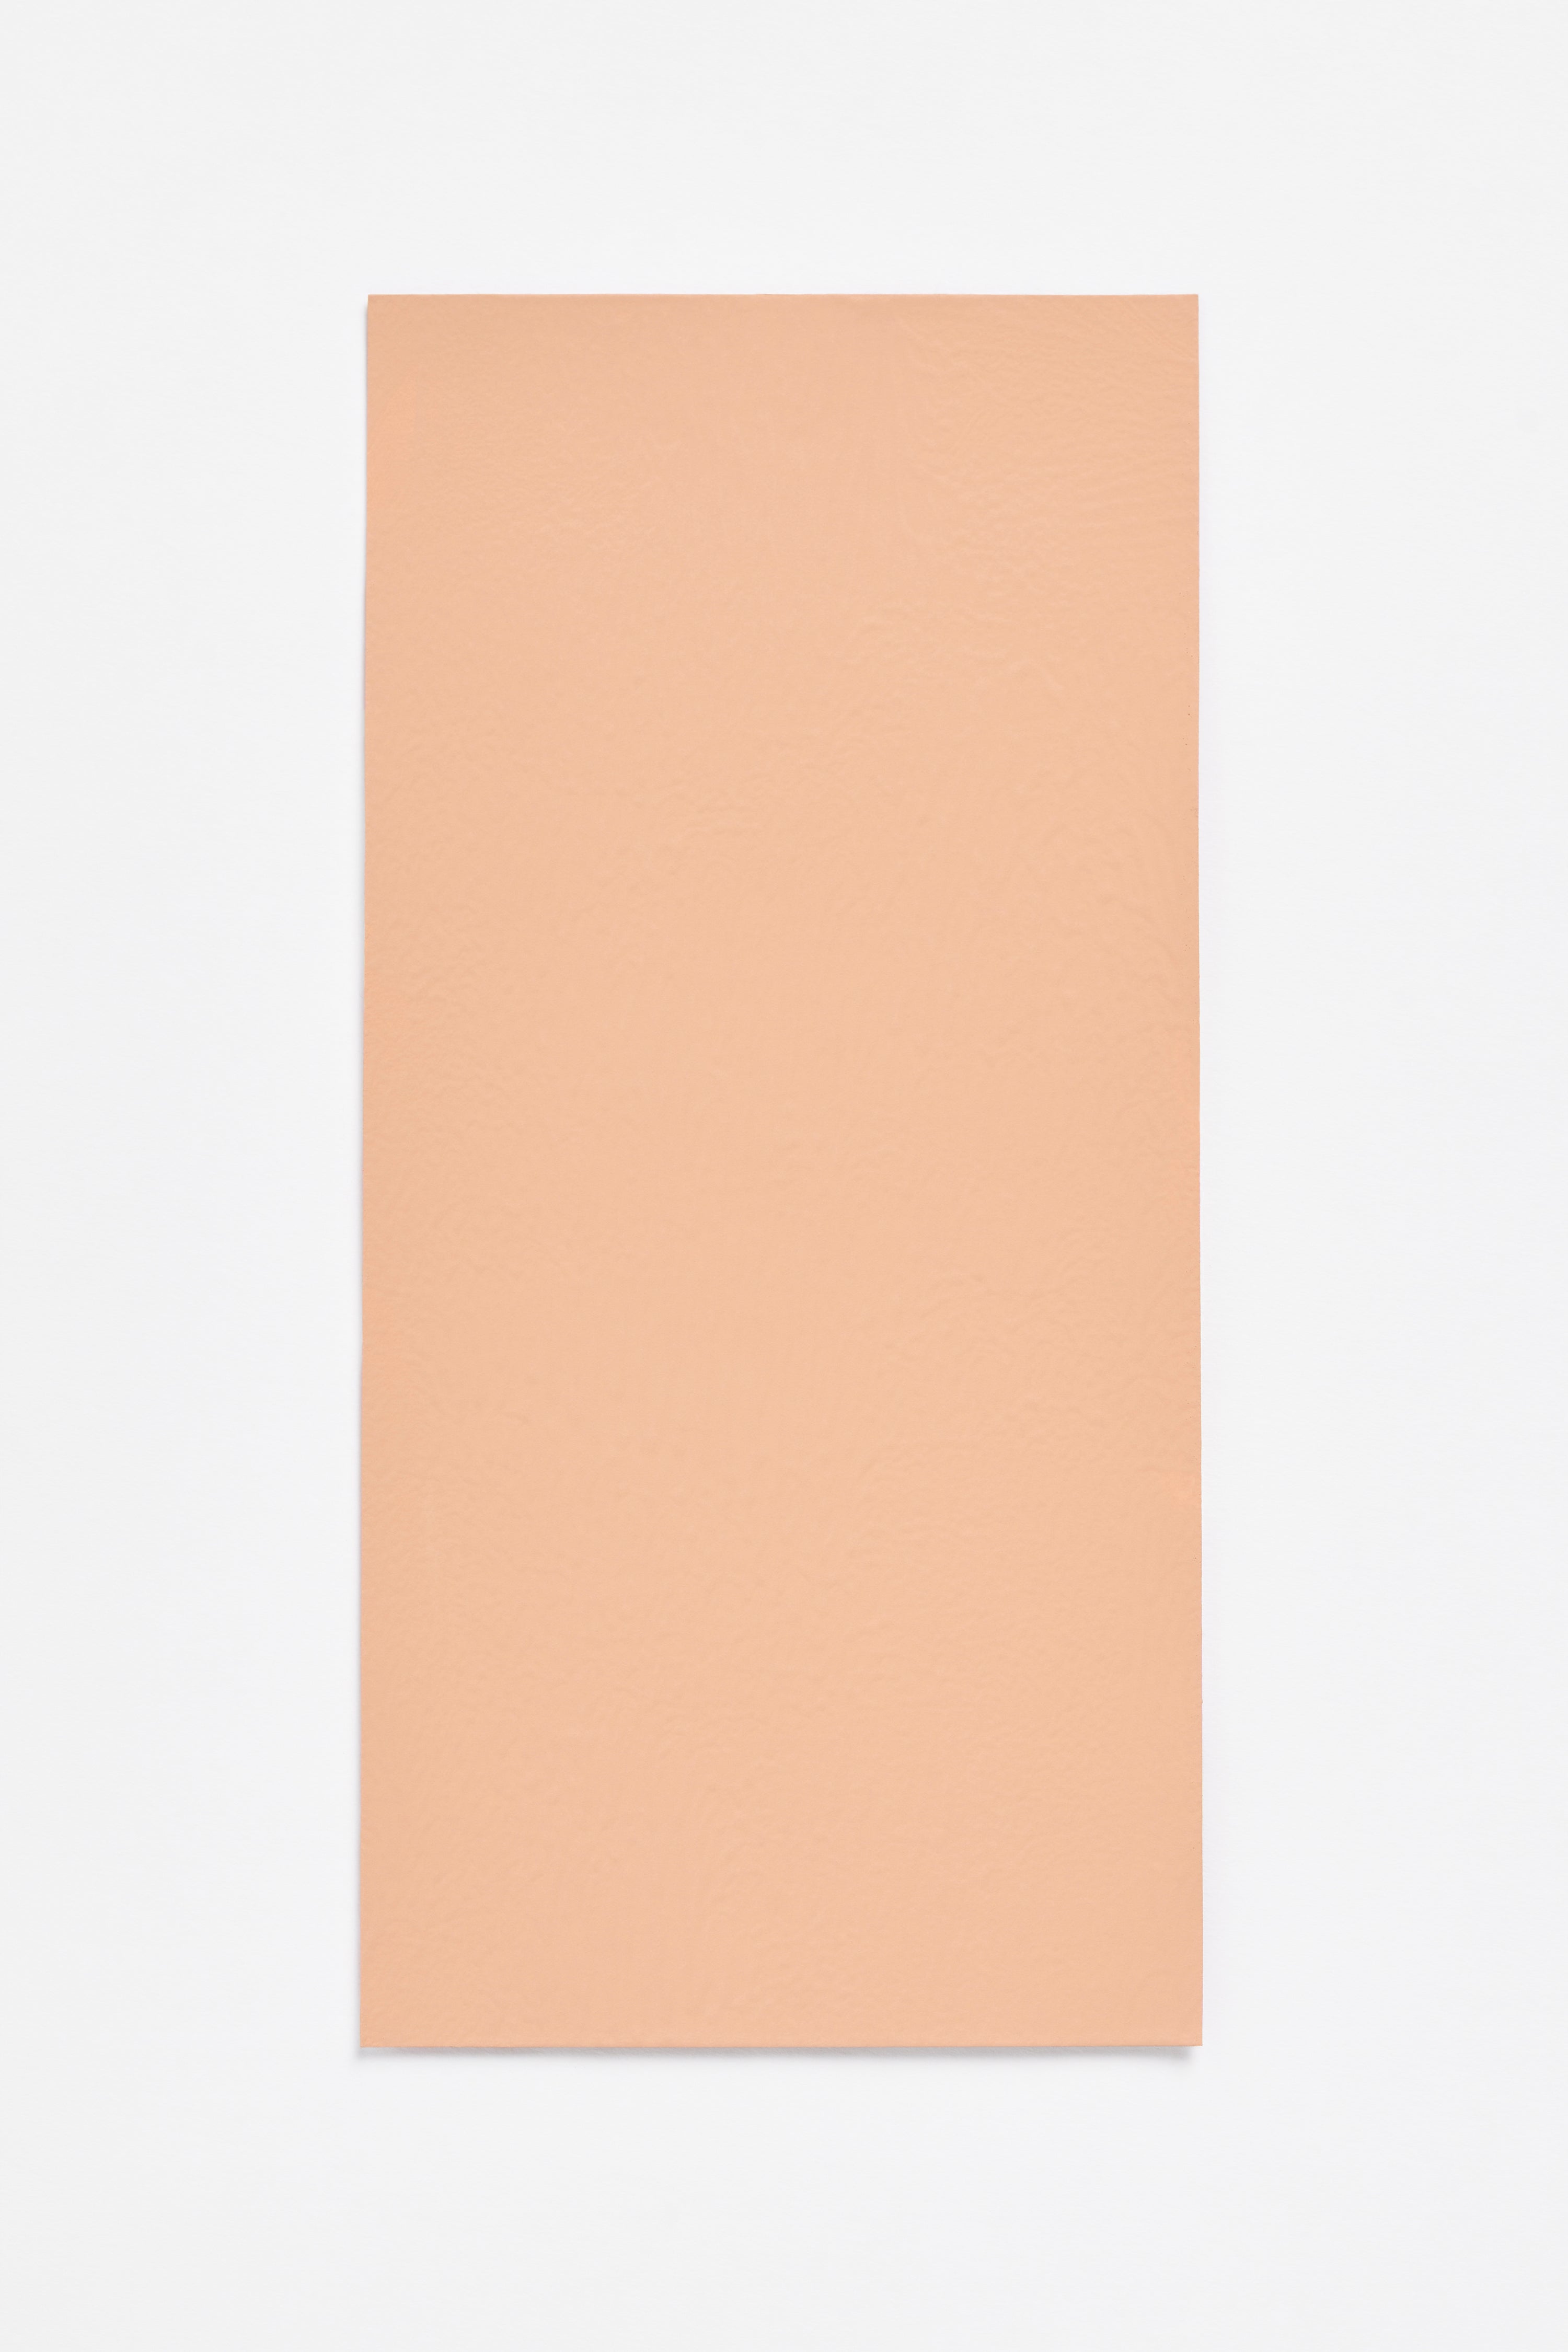 Peach — a paint colour developed by Sabine Marcelis for Blēo